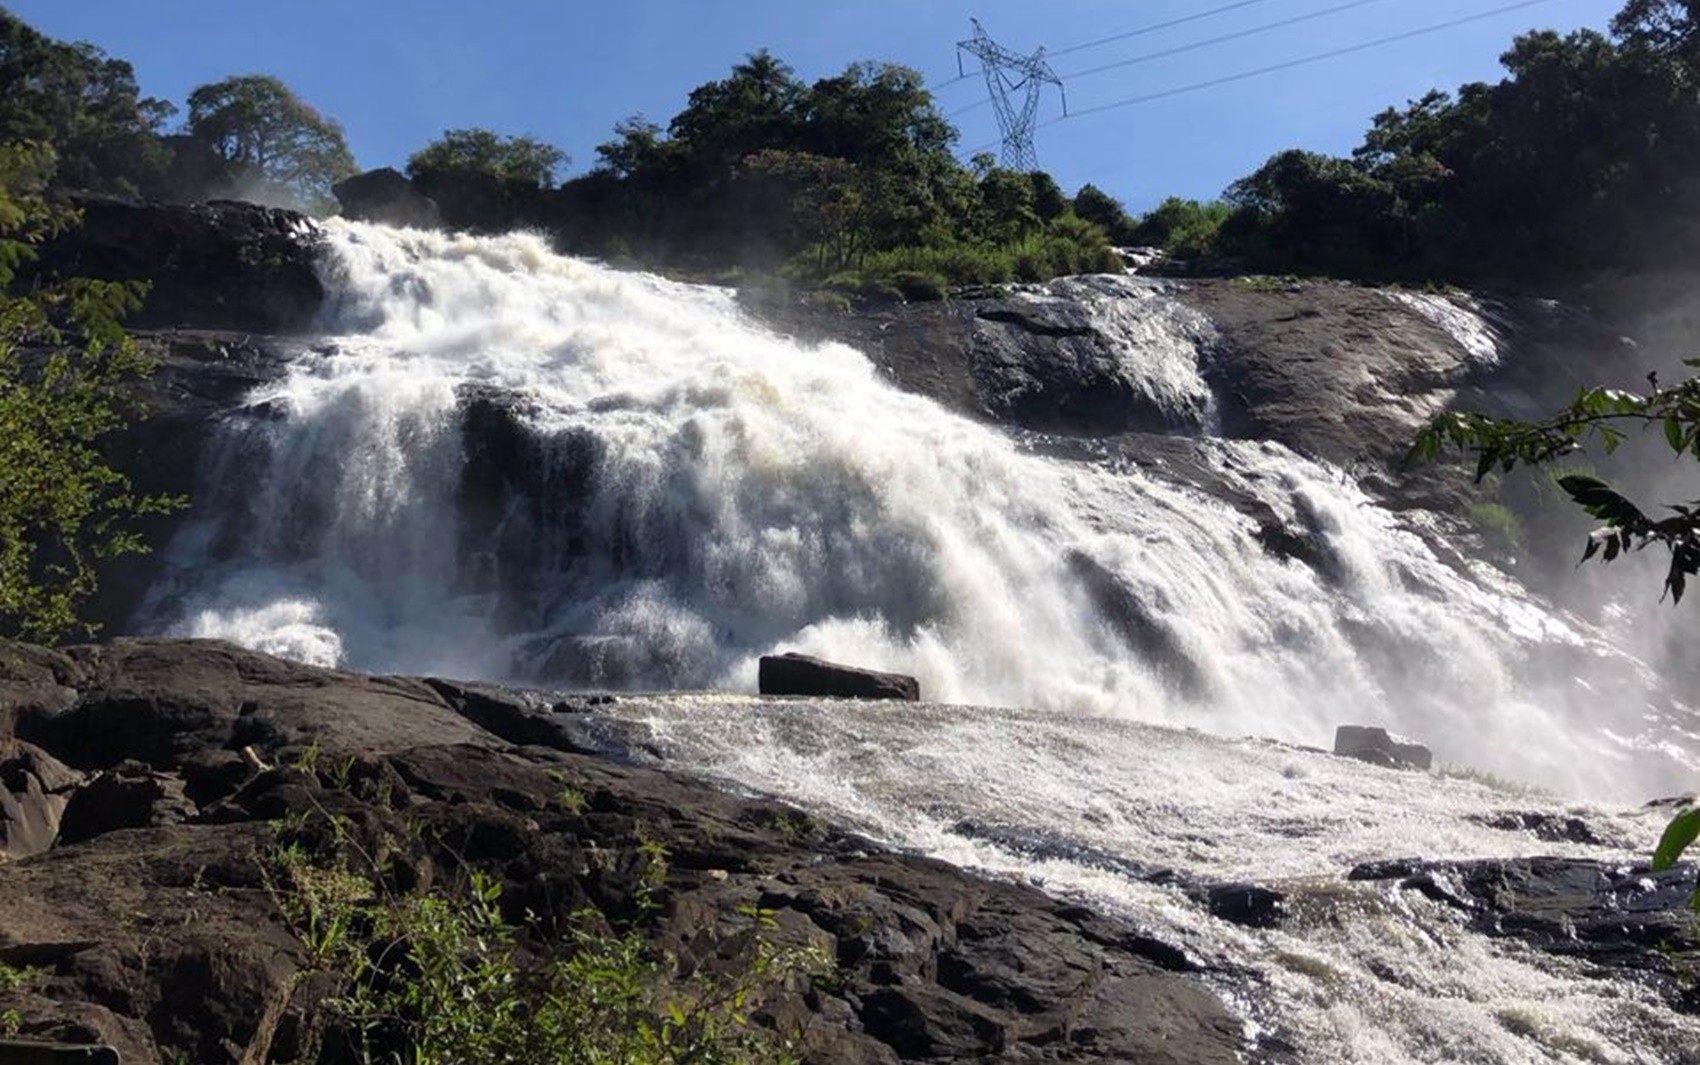 Cascata das Antas terá nova administração para exploração turística em Poços de Caldas, MG